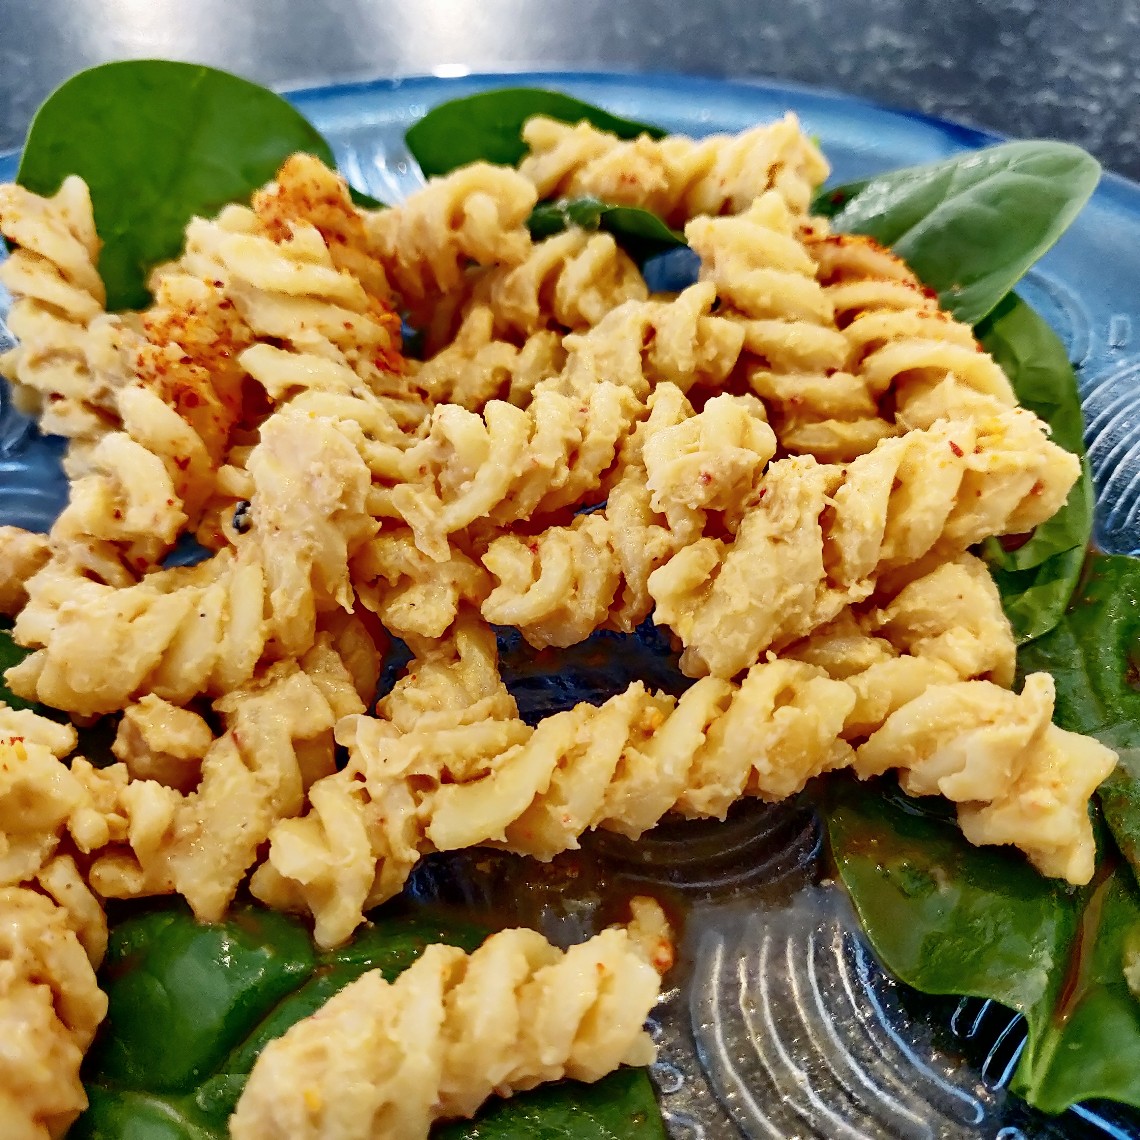 Vegant - Tuna-mayo style plant-based pasta salad